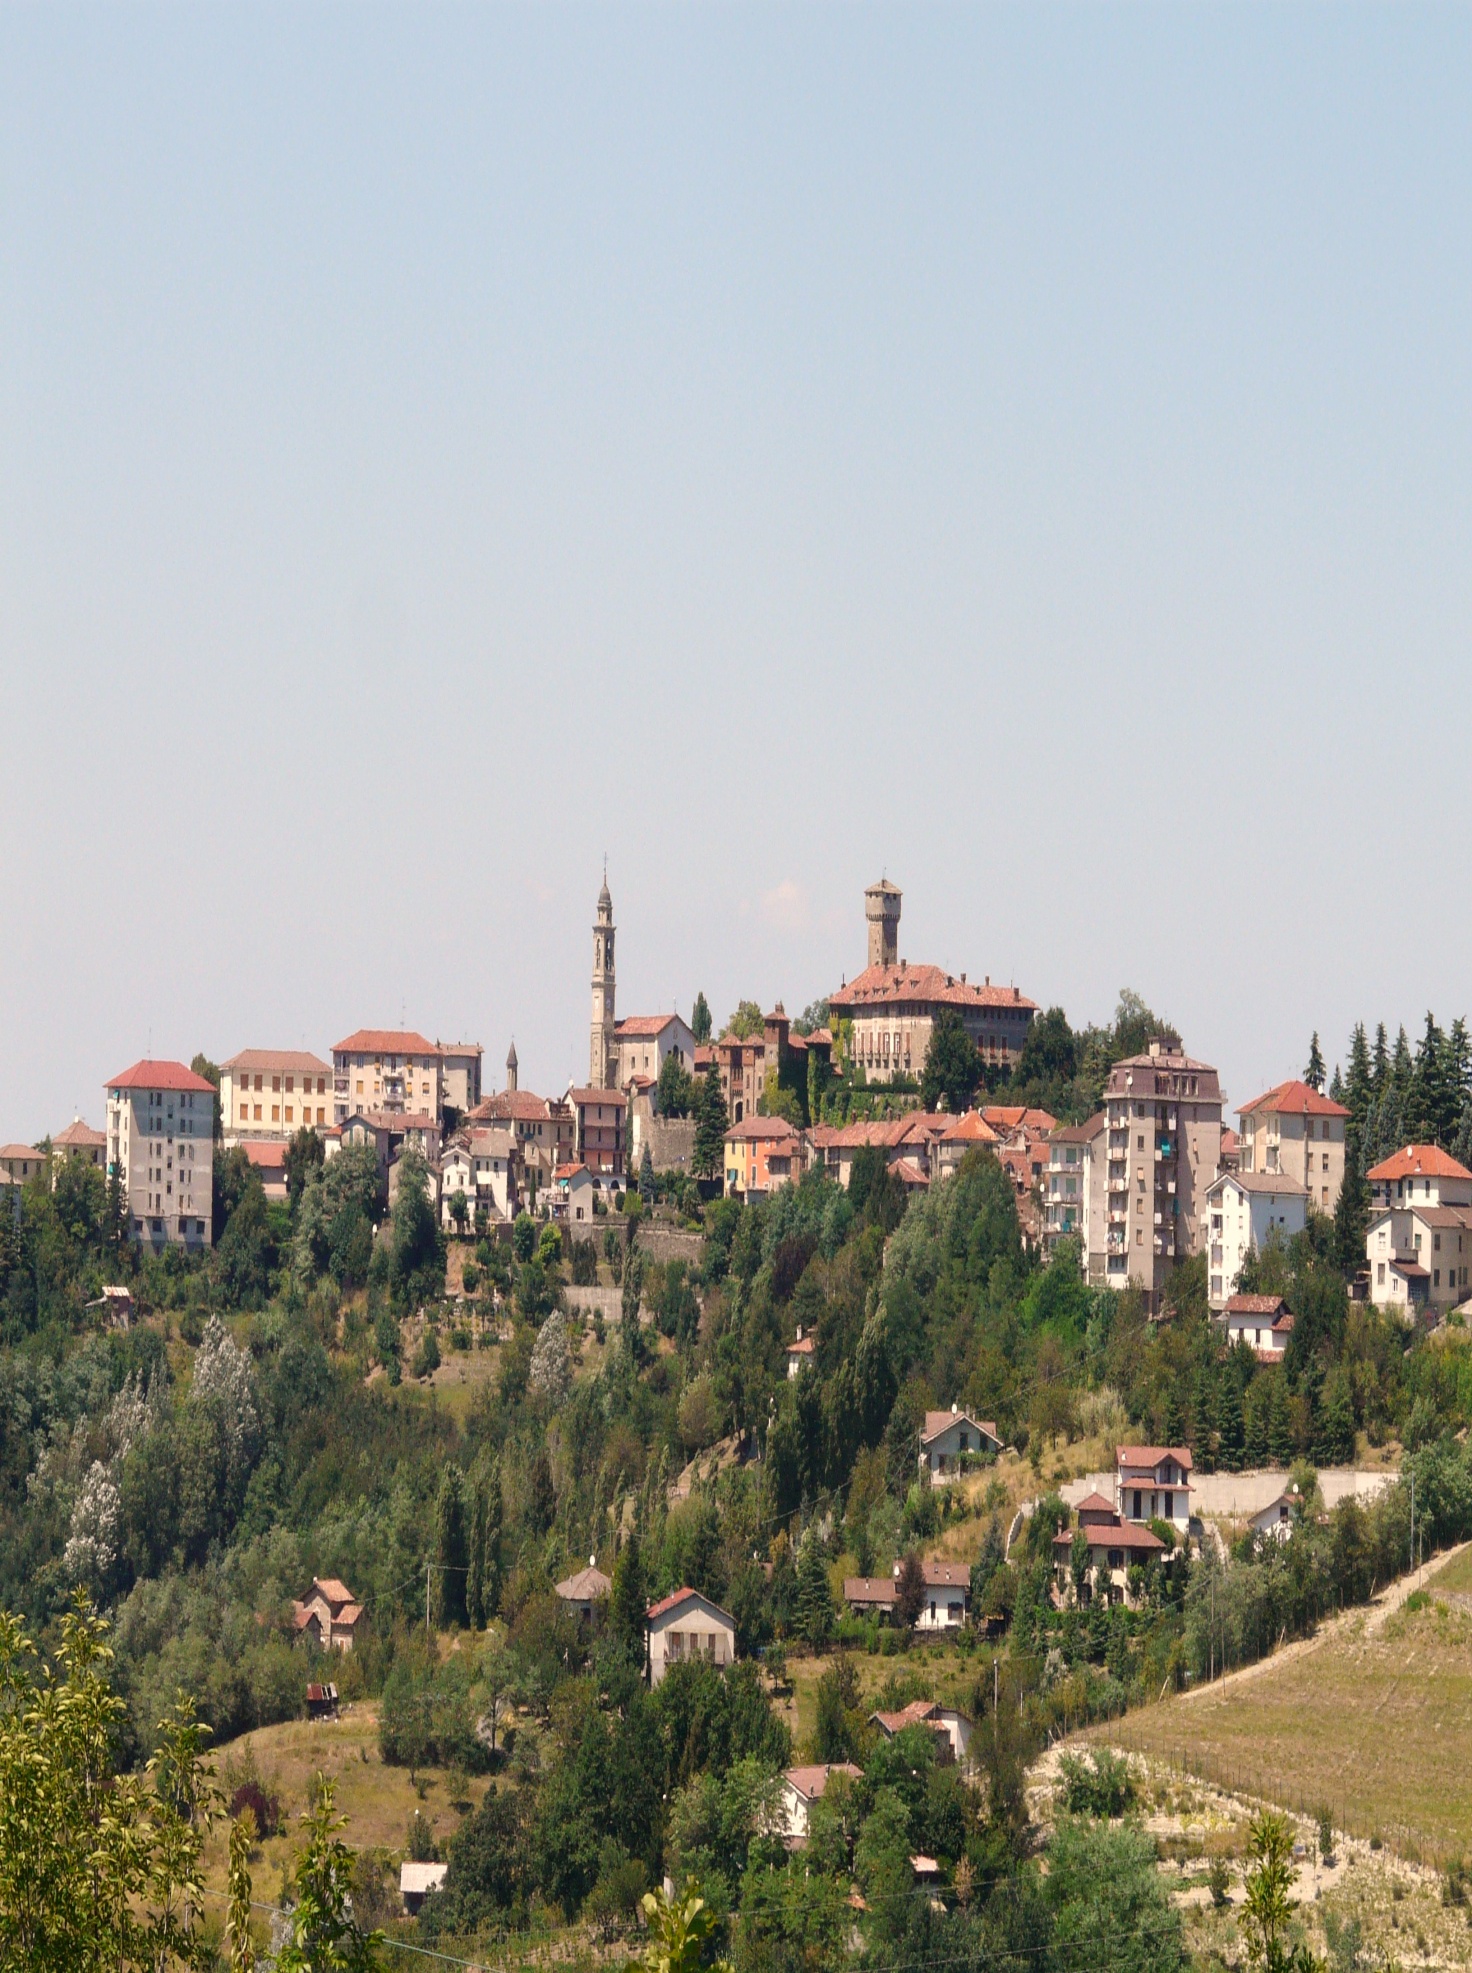 Tagliolo Monferrato - Wikipedia